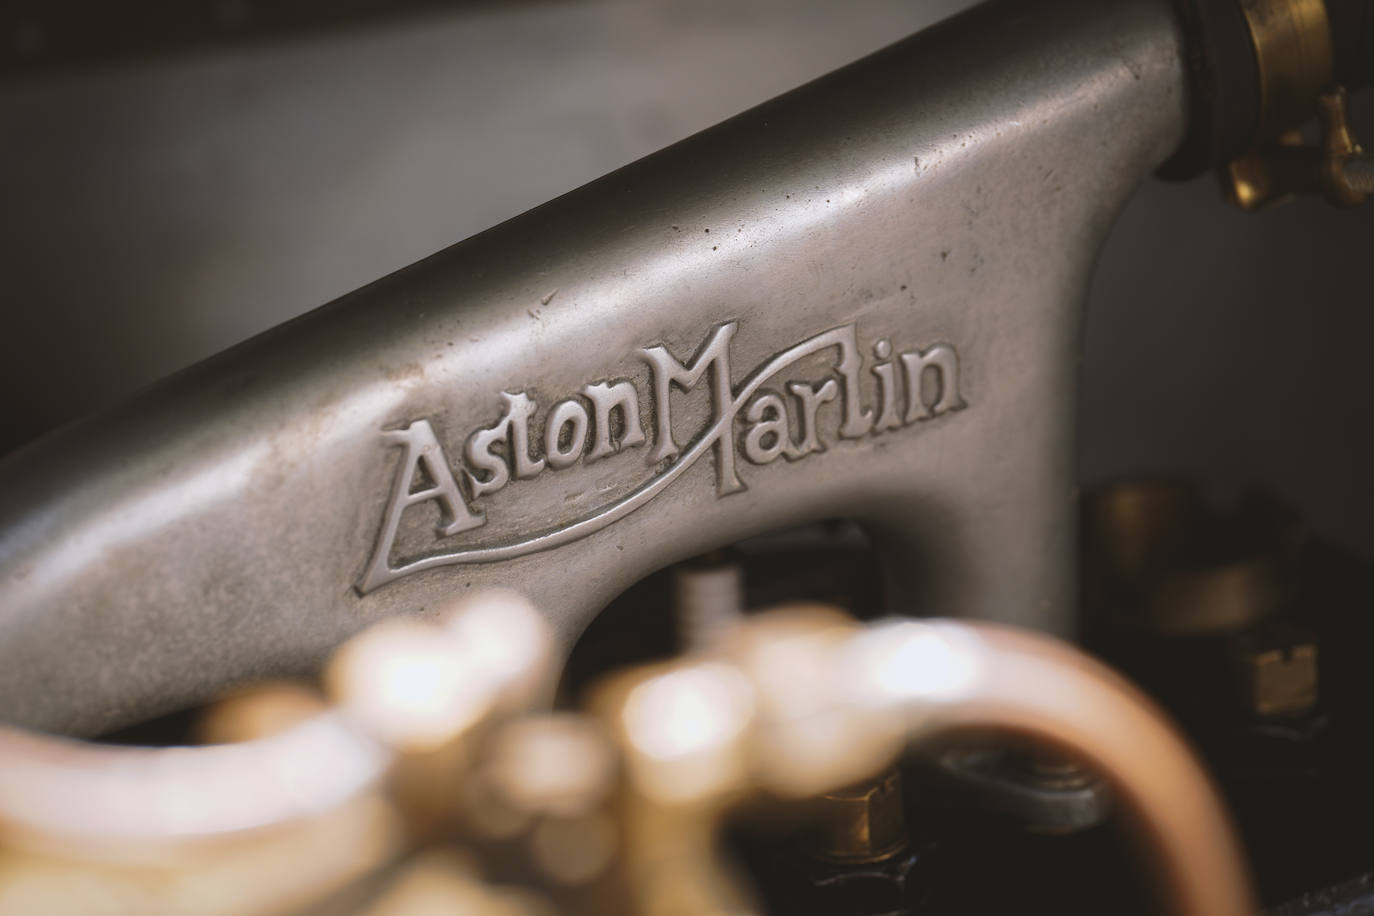 Fotos: Fotogalería: Unique Q by Aston Martin 